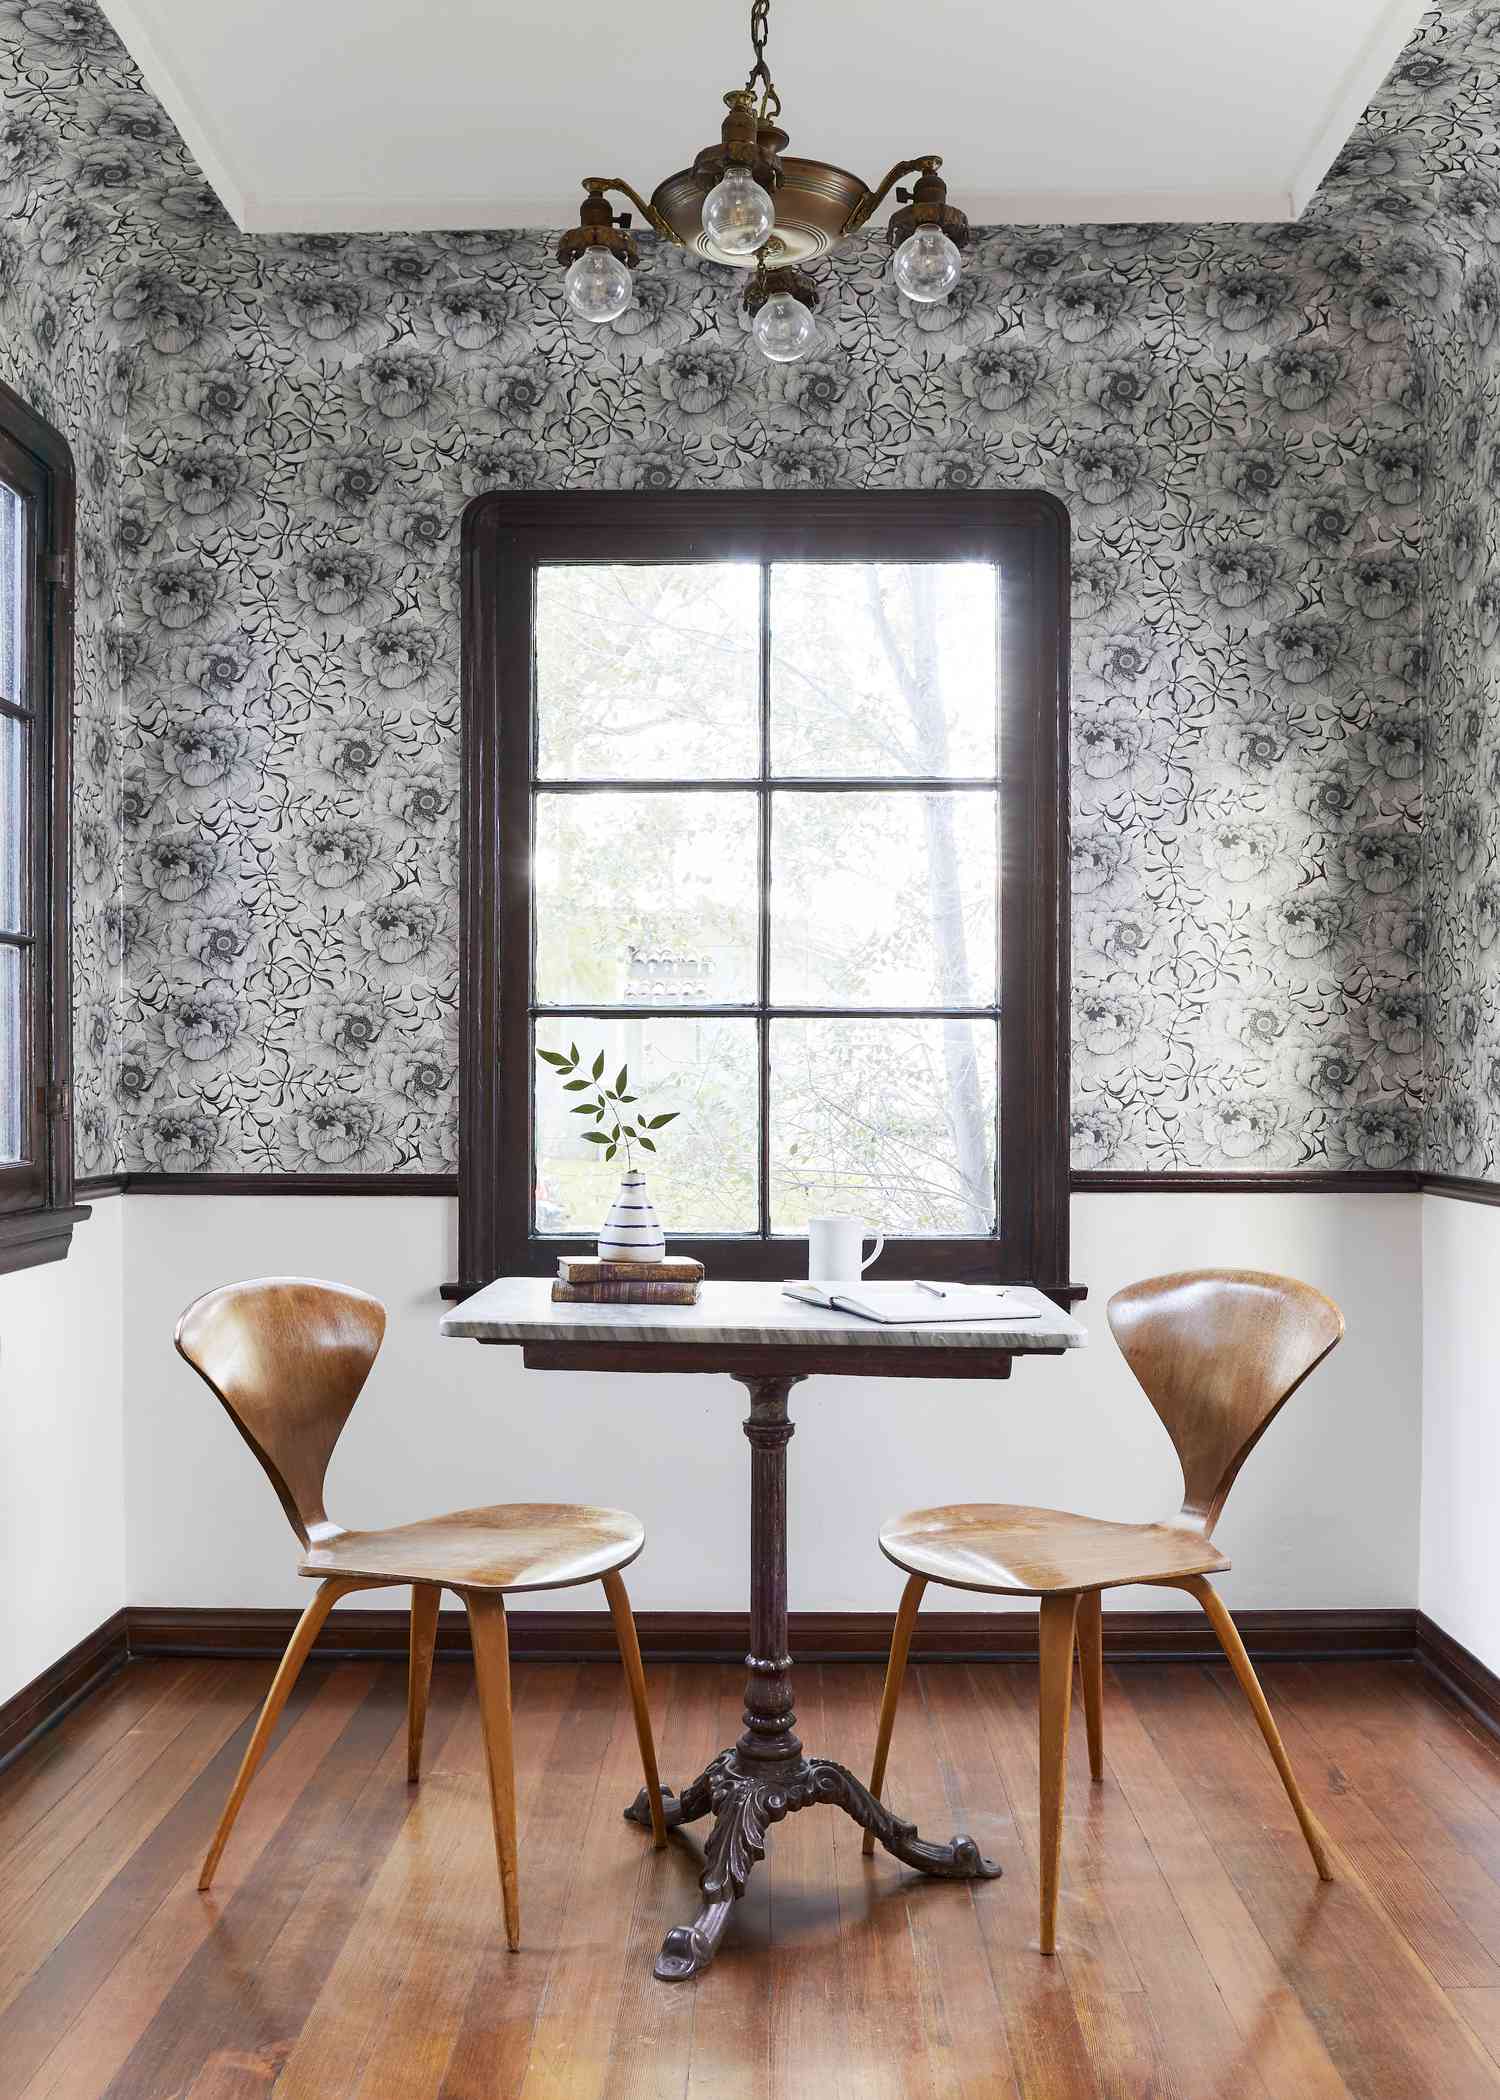 Papier peint floral dans une salle à manger avec des chaises en bois